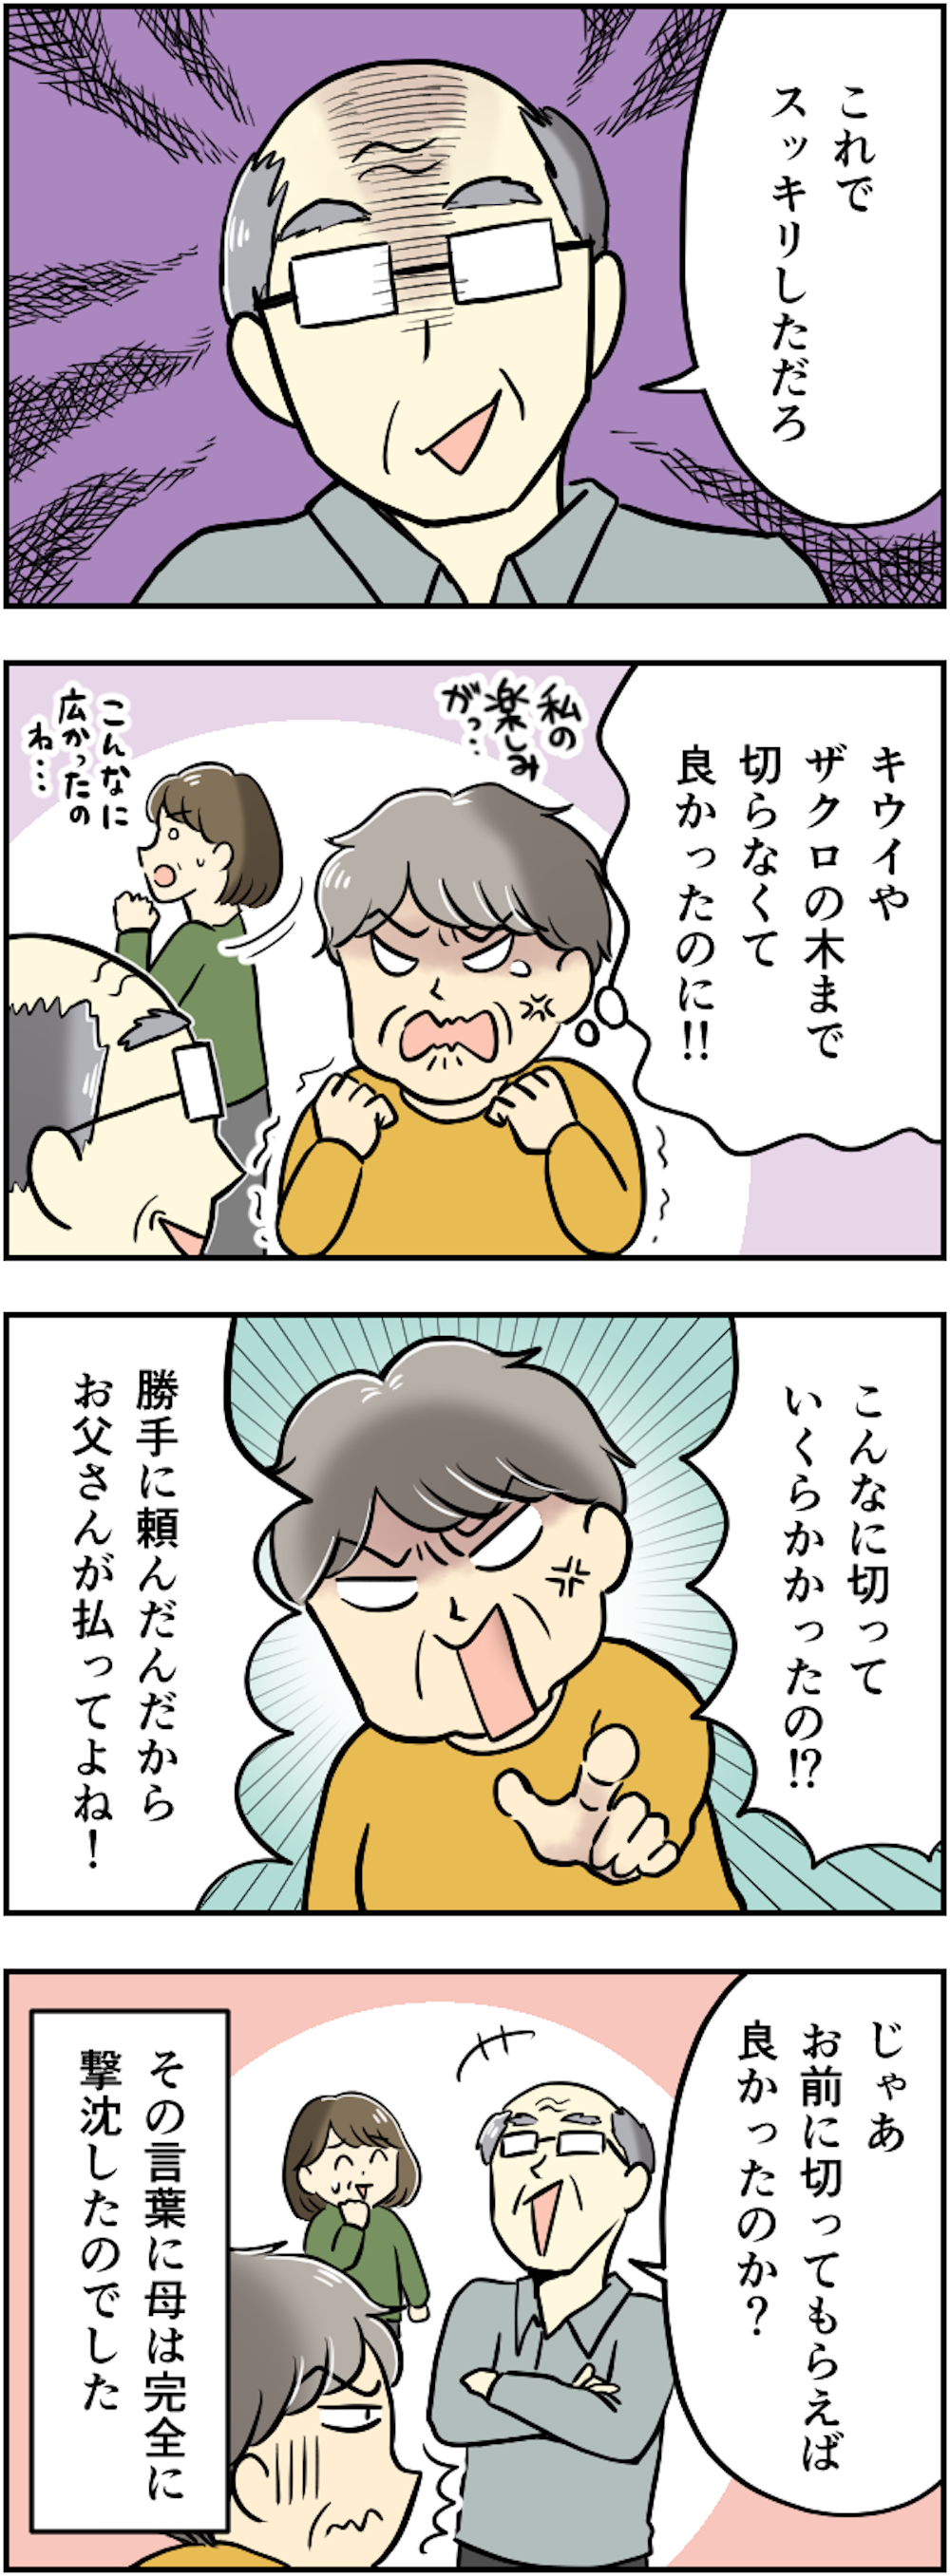 81歳父と79歳母の夫婦喧嘩。暴言に耐え続けた父が密かに考えていた「ある計画」【漫画】 209kansei_004.png